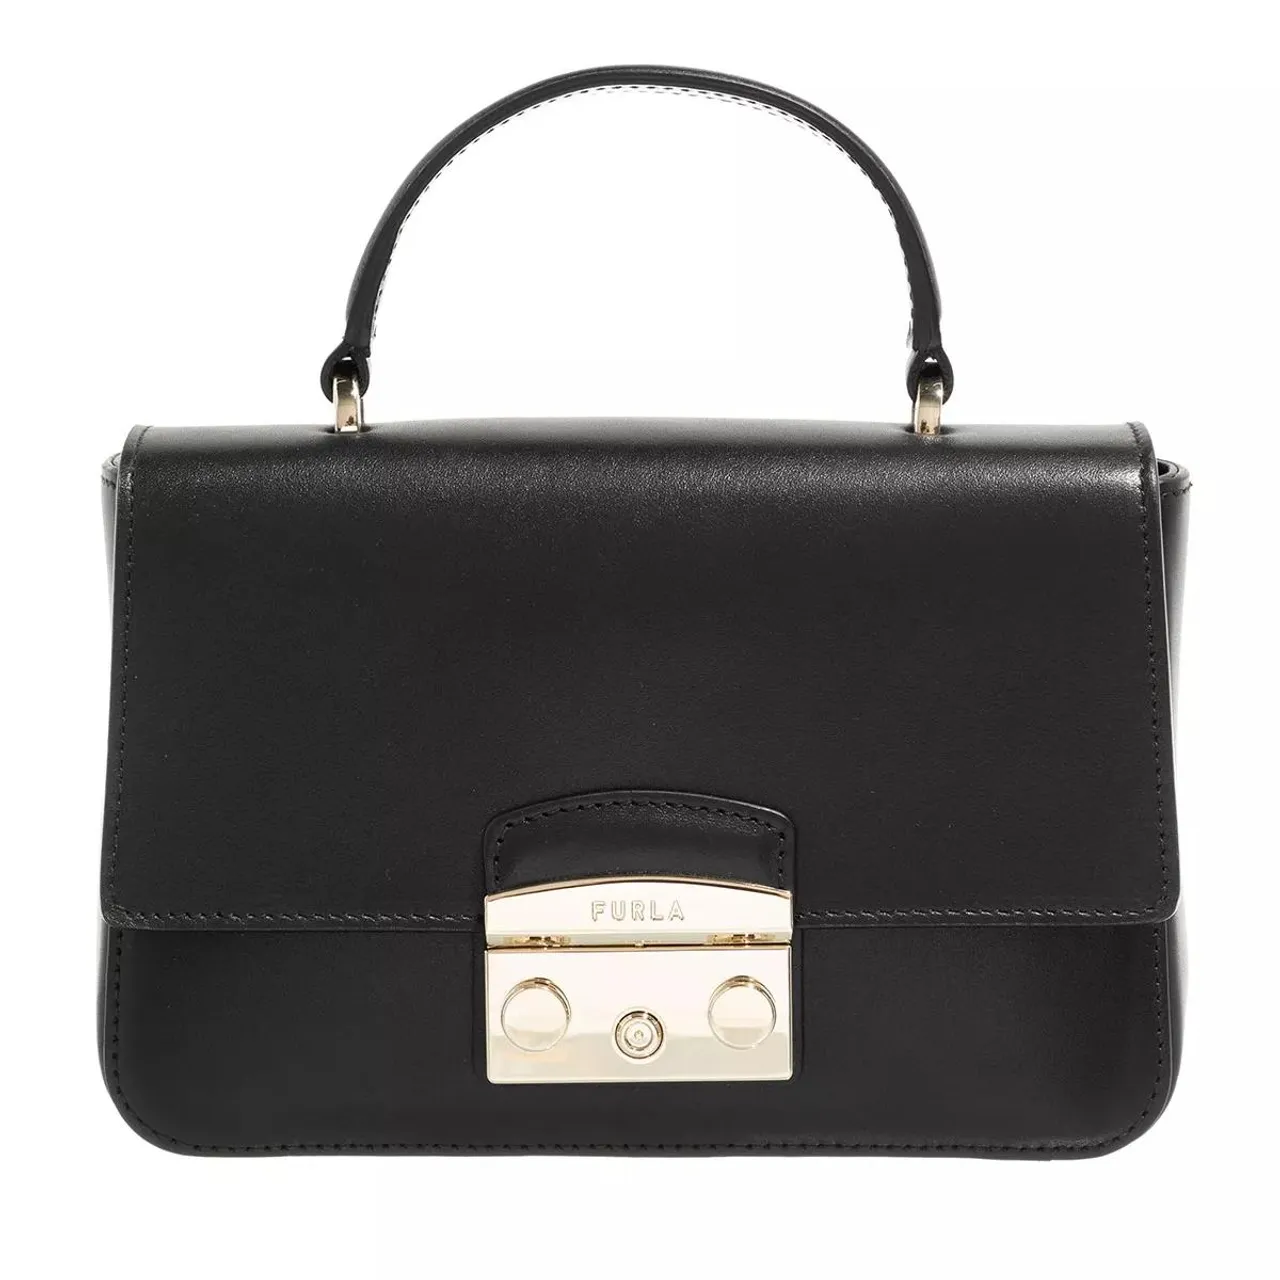 Furla Crossbody Bags - Metropolis Mini Top Handle - black - Crossbody Bags for ladies